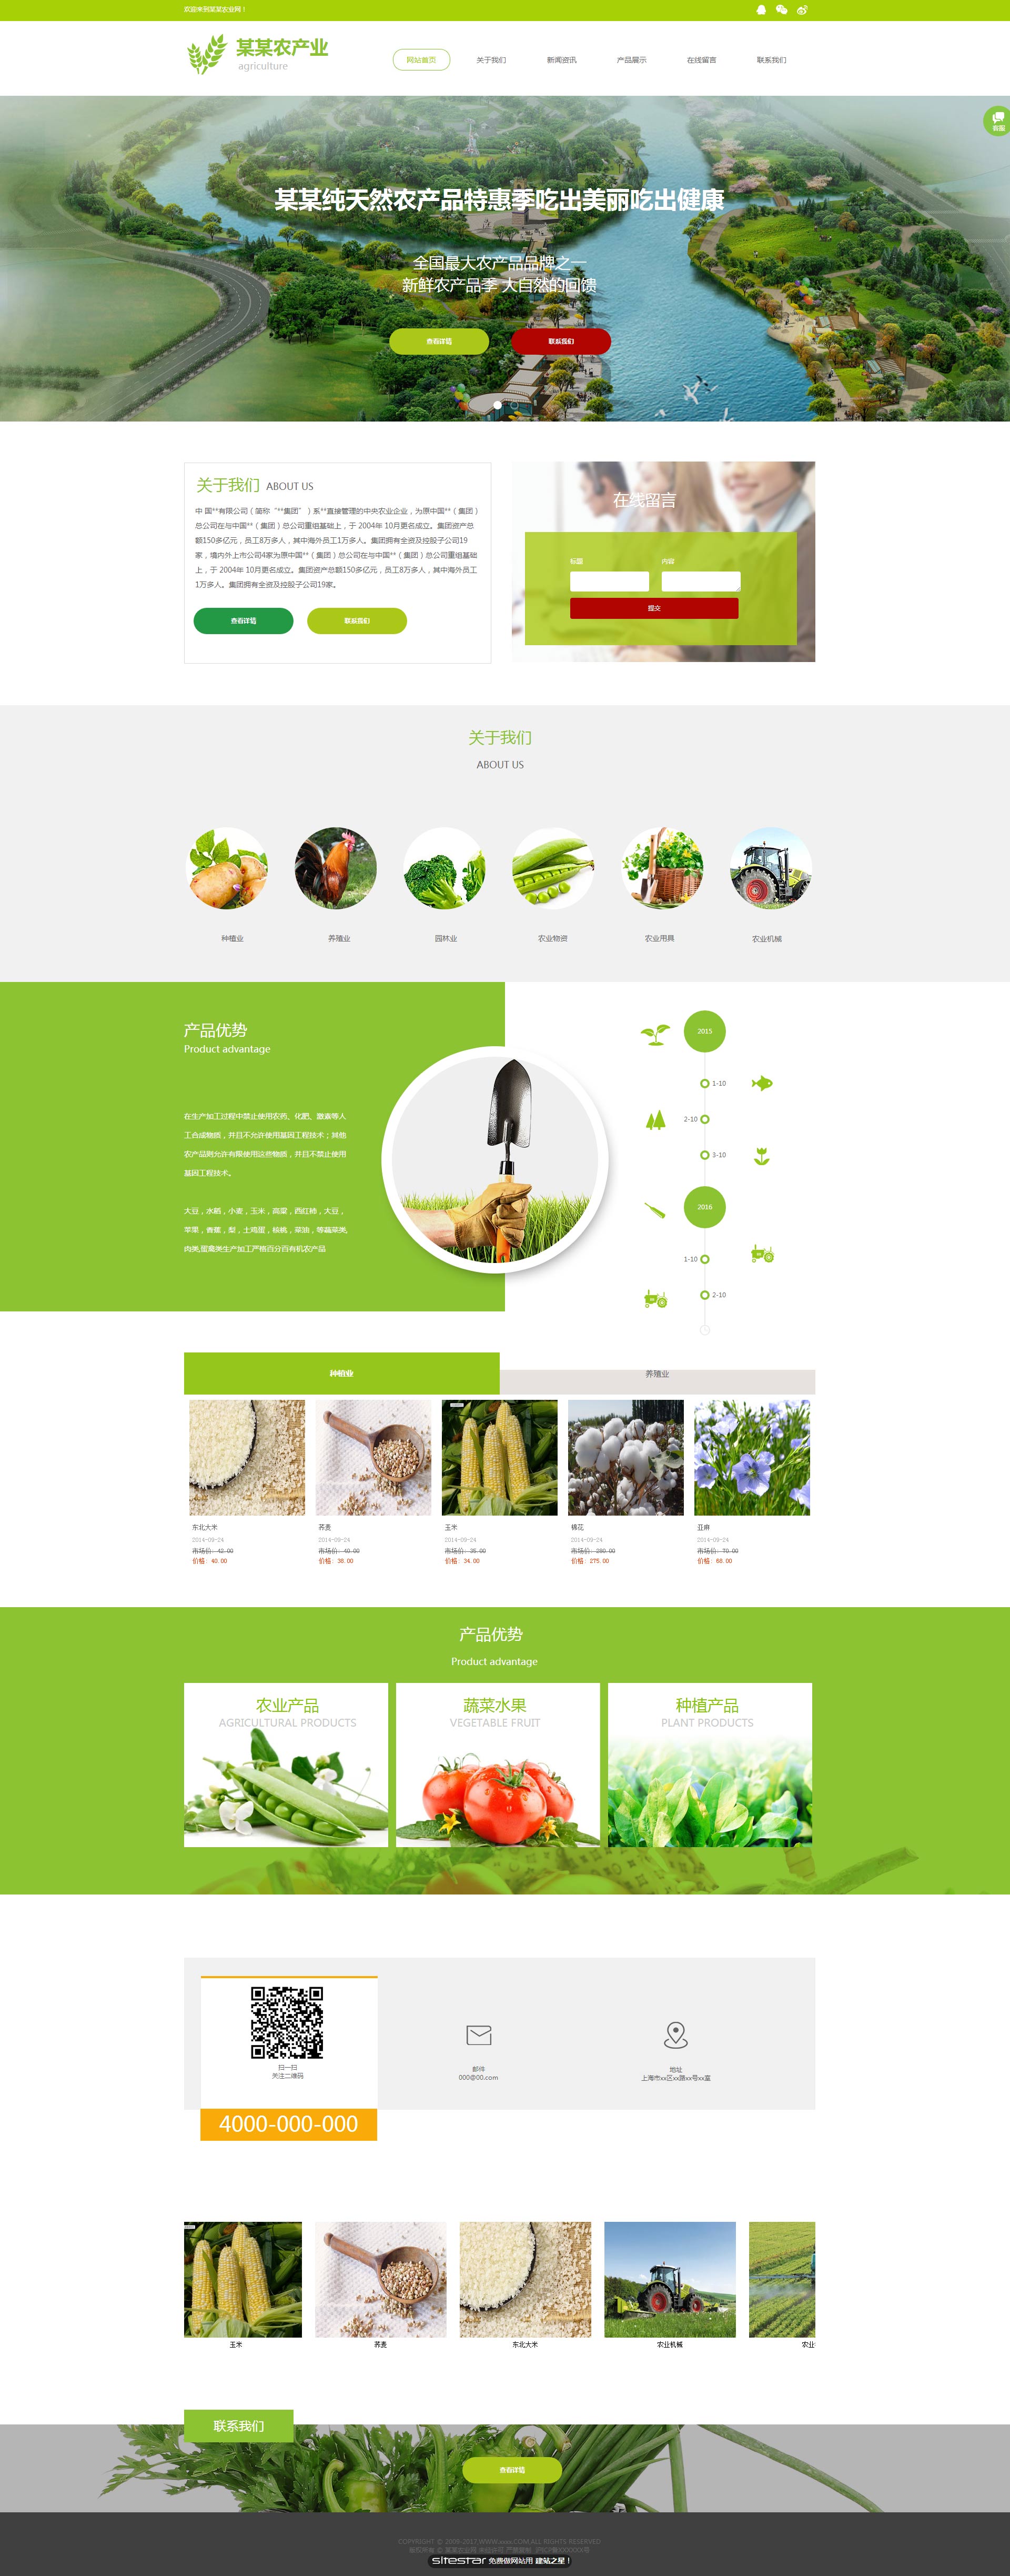 企业网站精美模板-agriculture-1144395